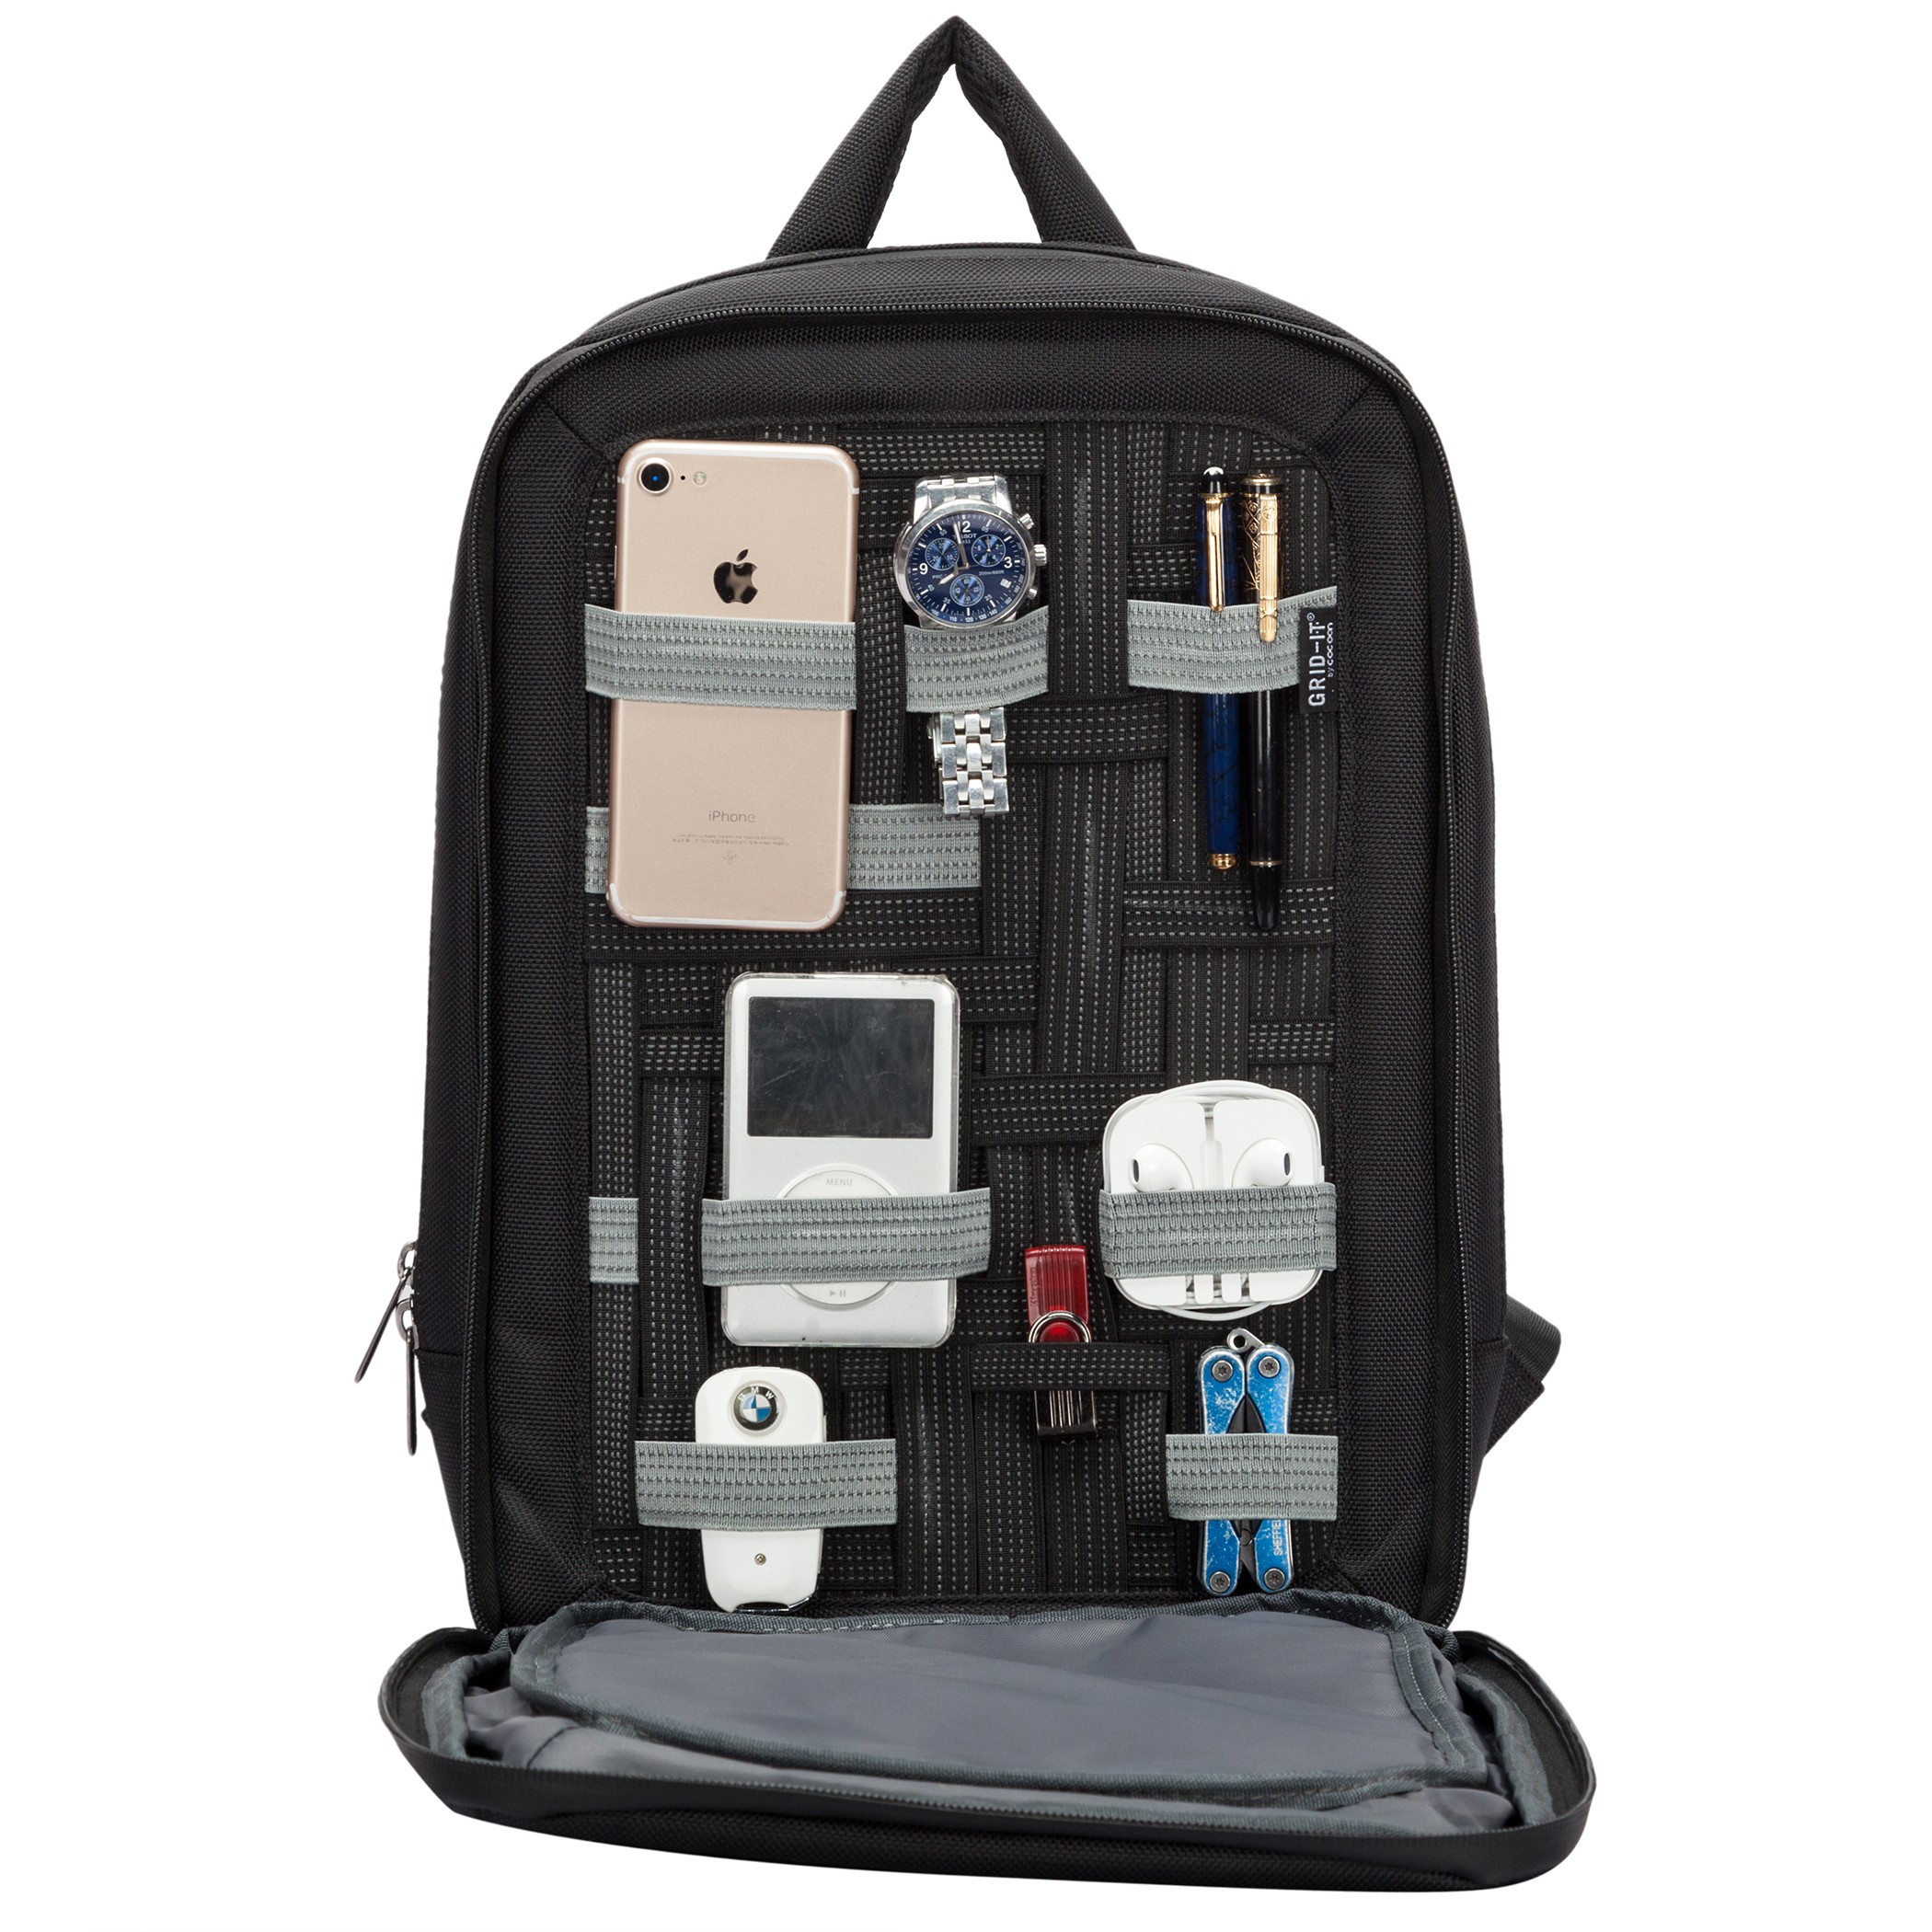 Laptop / 2 Reißverschlussfächer / Bordeaux Laptop Rucksack mit besonderem Organisationssystem / Praktischer Backpack für Laptops / Daypack / Rucksack für Tablet 10 Zoll & 15,6 Zoll Cocoon SLIM 